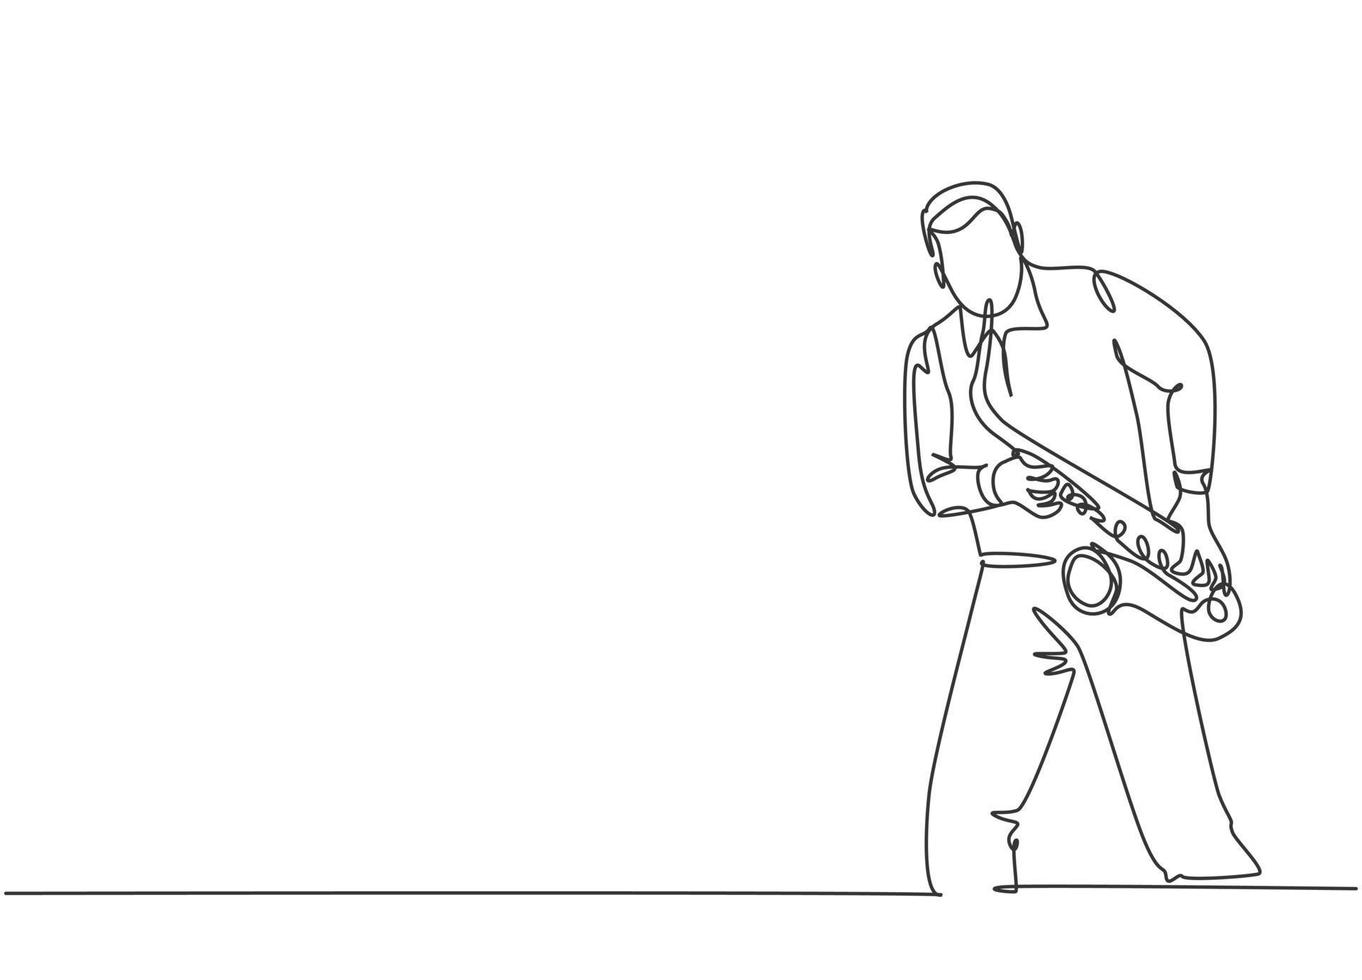 um desenho de linha contínua de um jovem saxofonista masculino feliz se apresentando para tocar saxofone em um concerto de música. músico artista desempenho conceito única linha desenho desenho vetorial ilustração gráfica vetor